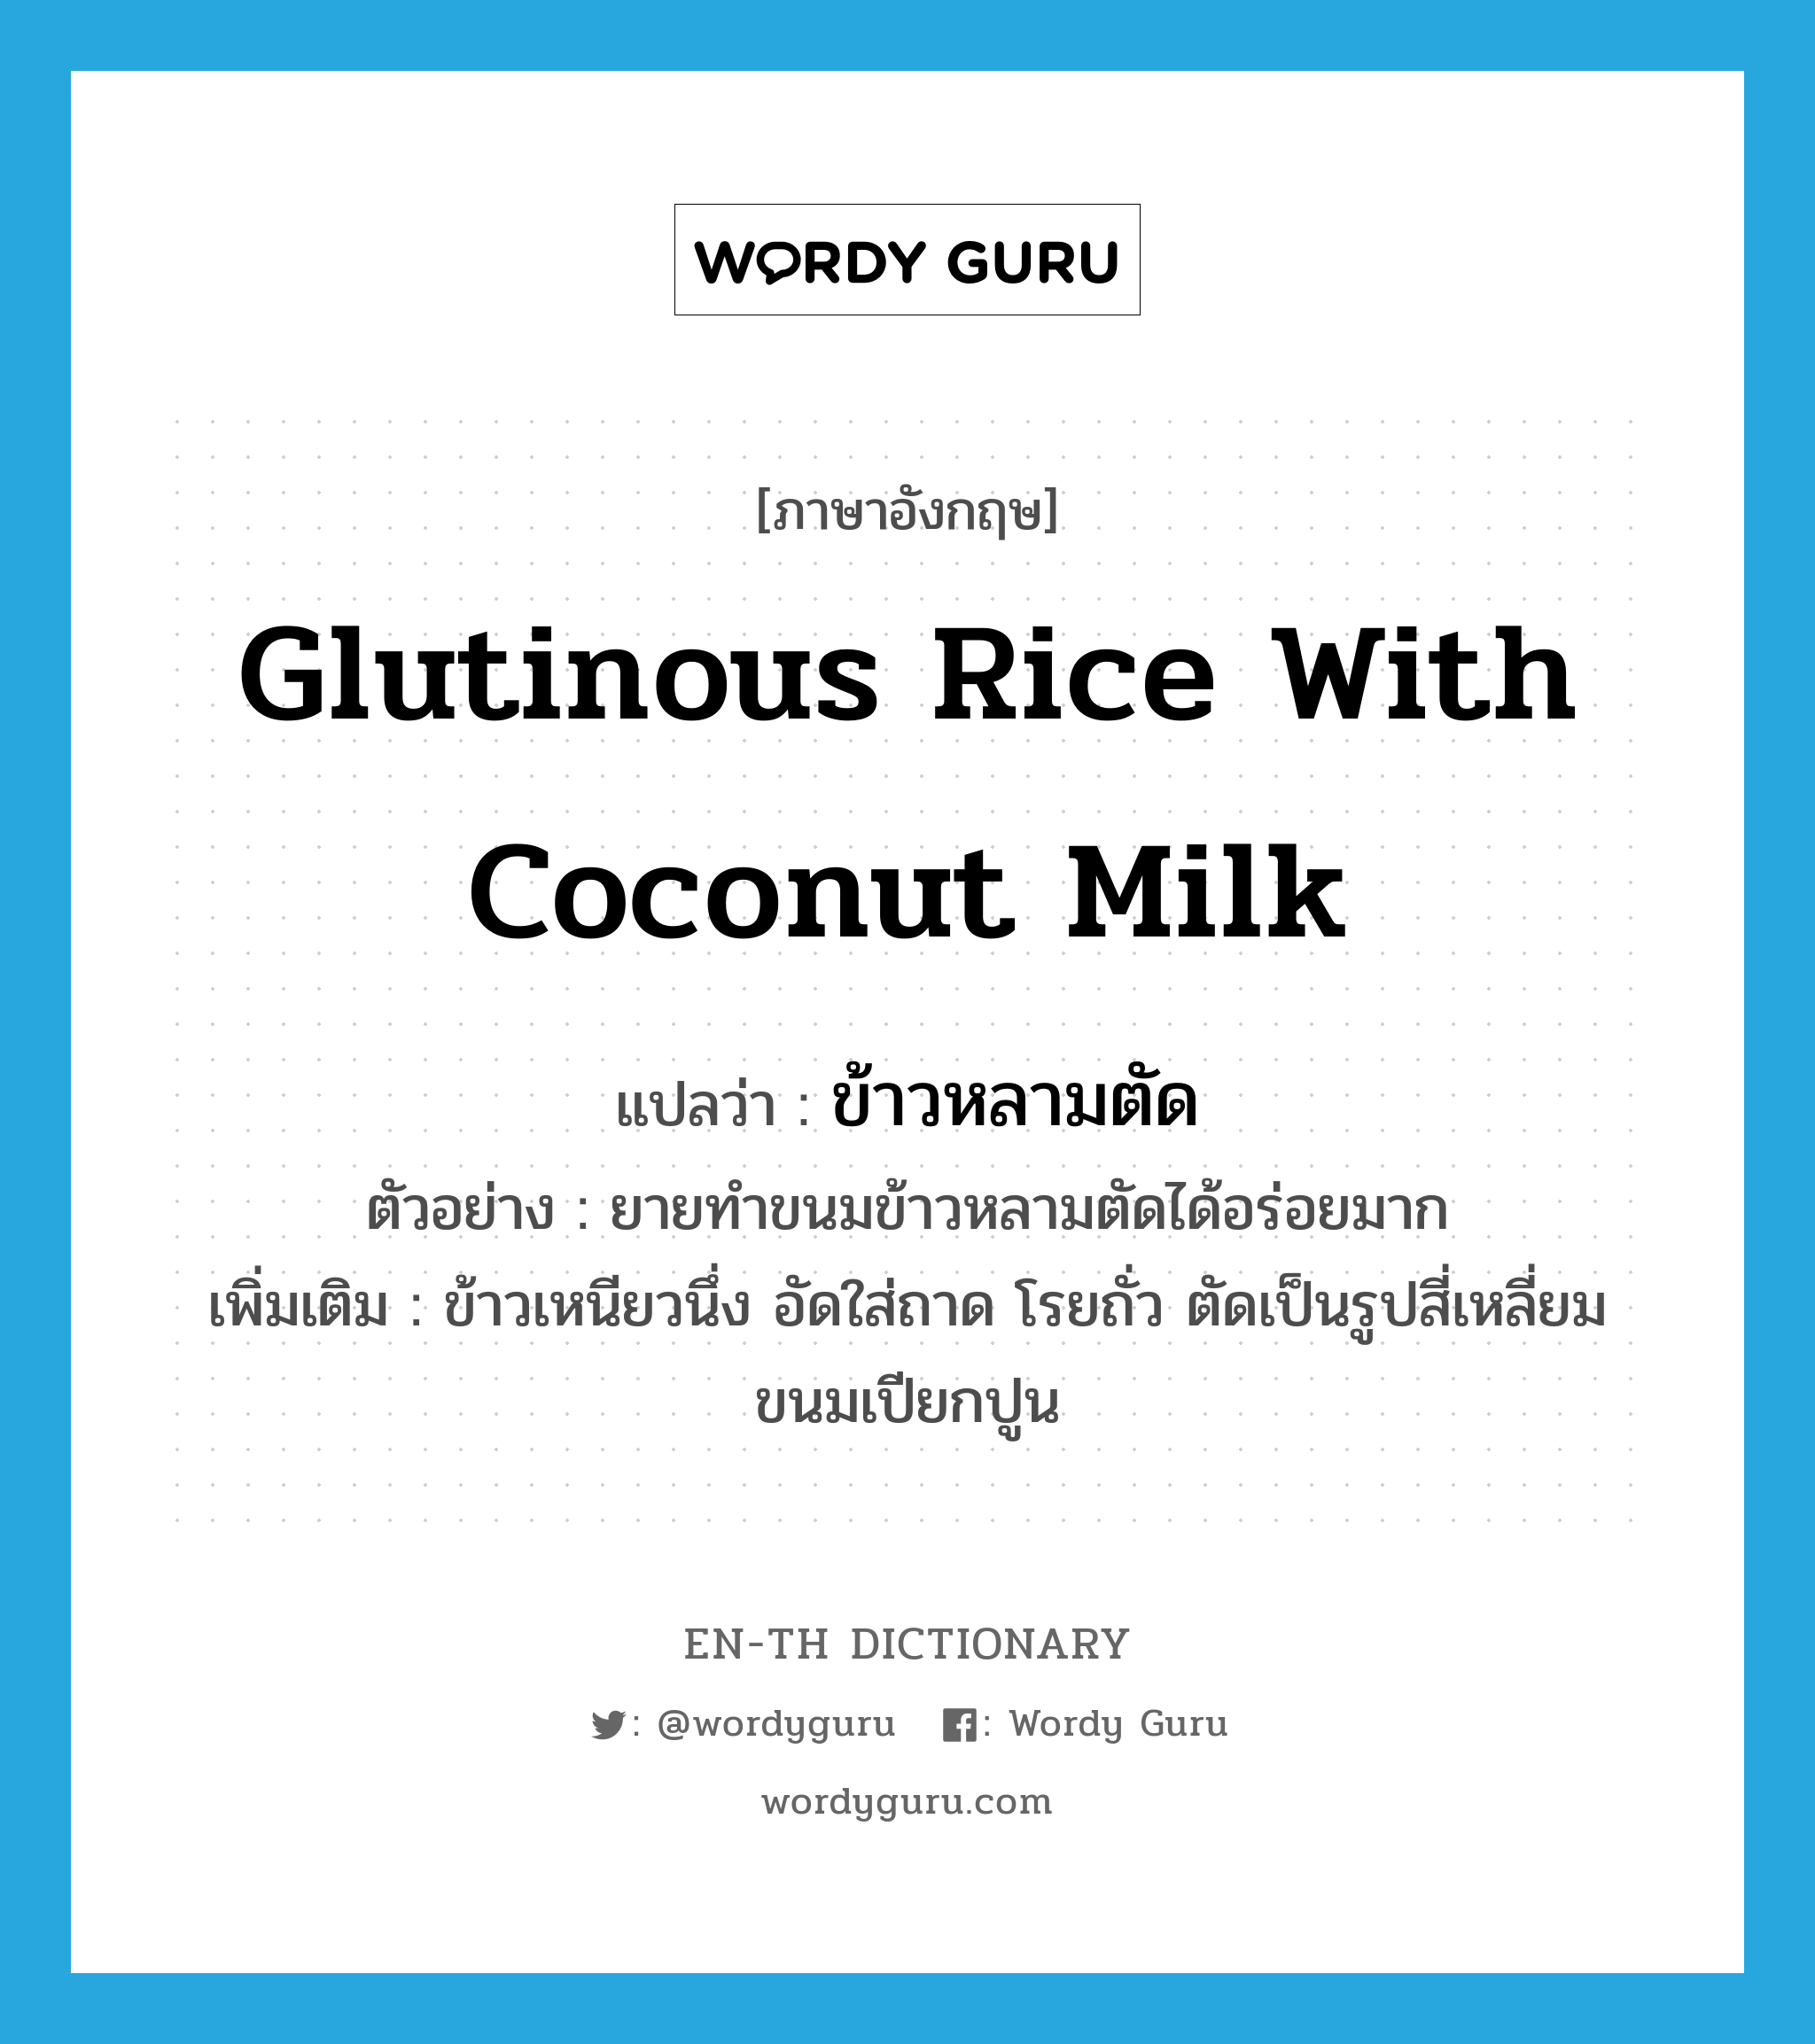 ข้าวหลามตัด ภาษาอังกฤษ?, คำศัพท์ภาษาอังกฤษ ข้าวหลามตัด แปลว่า glutinous rice with coconut milk ประเภท N ตัวอย่าง ยายทำขนมข้าวหลามตัดได้อร่อยมาก เพิ่มเติม ข้าวเหนียวนึ่ง อัดใส่ถาด โรยถั่ว ตัดเป็นรูปสี่เหลี่ยมขนมเปียกปูน หมวด N